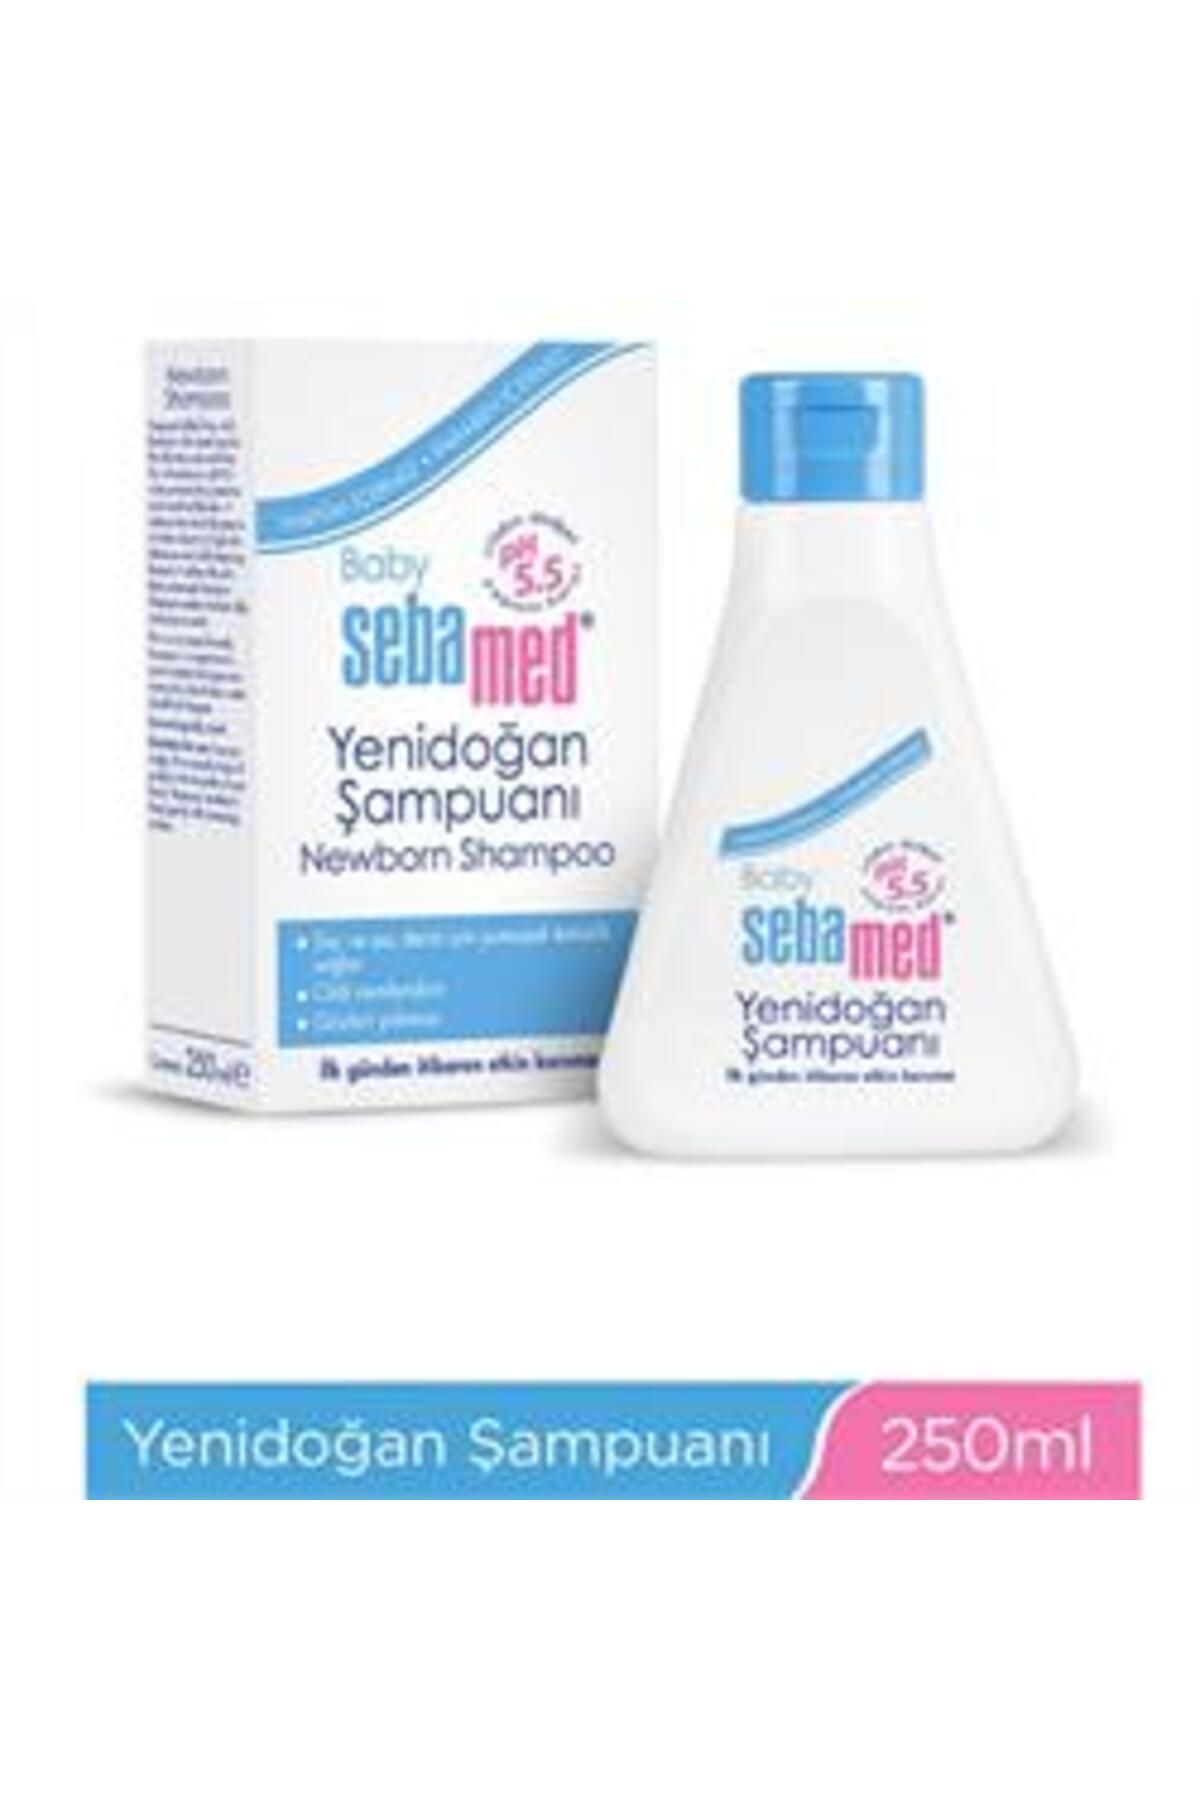 Sebamed Baby Yenidoğan Şampuan 250 ml ( 1 ADET )